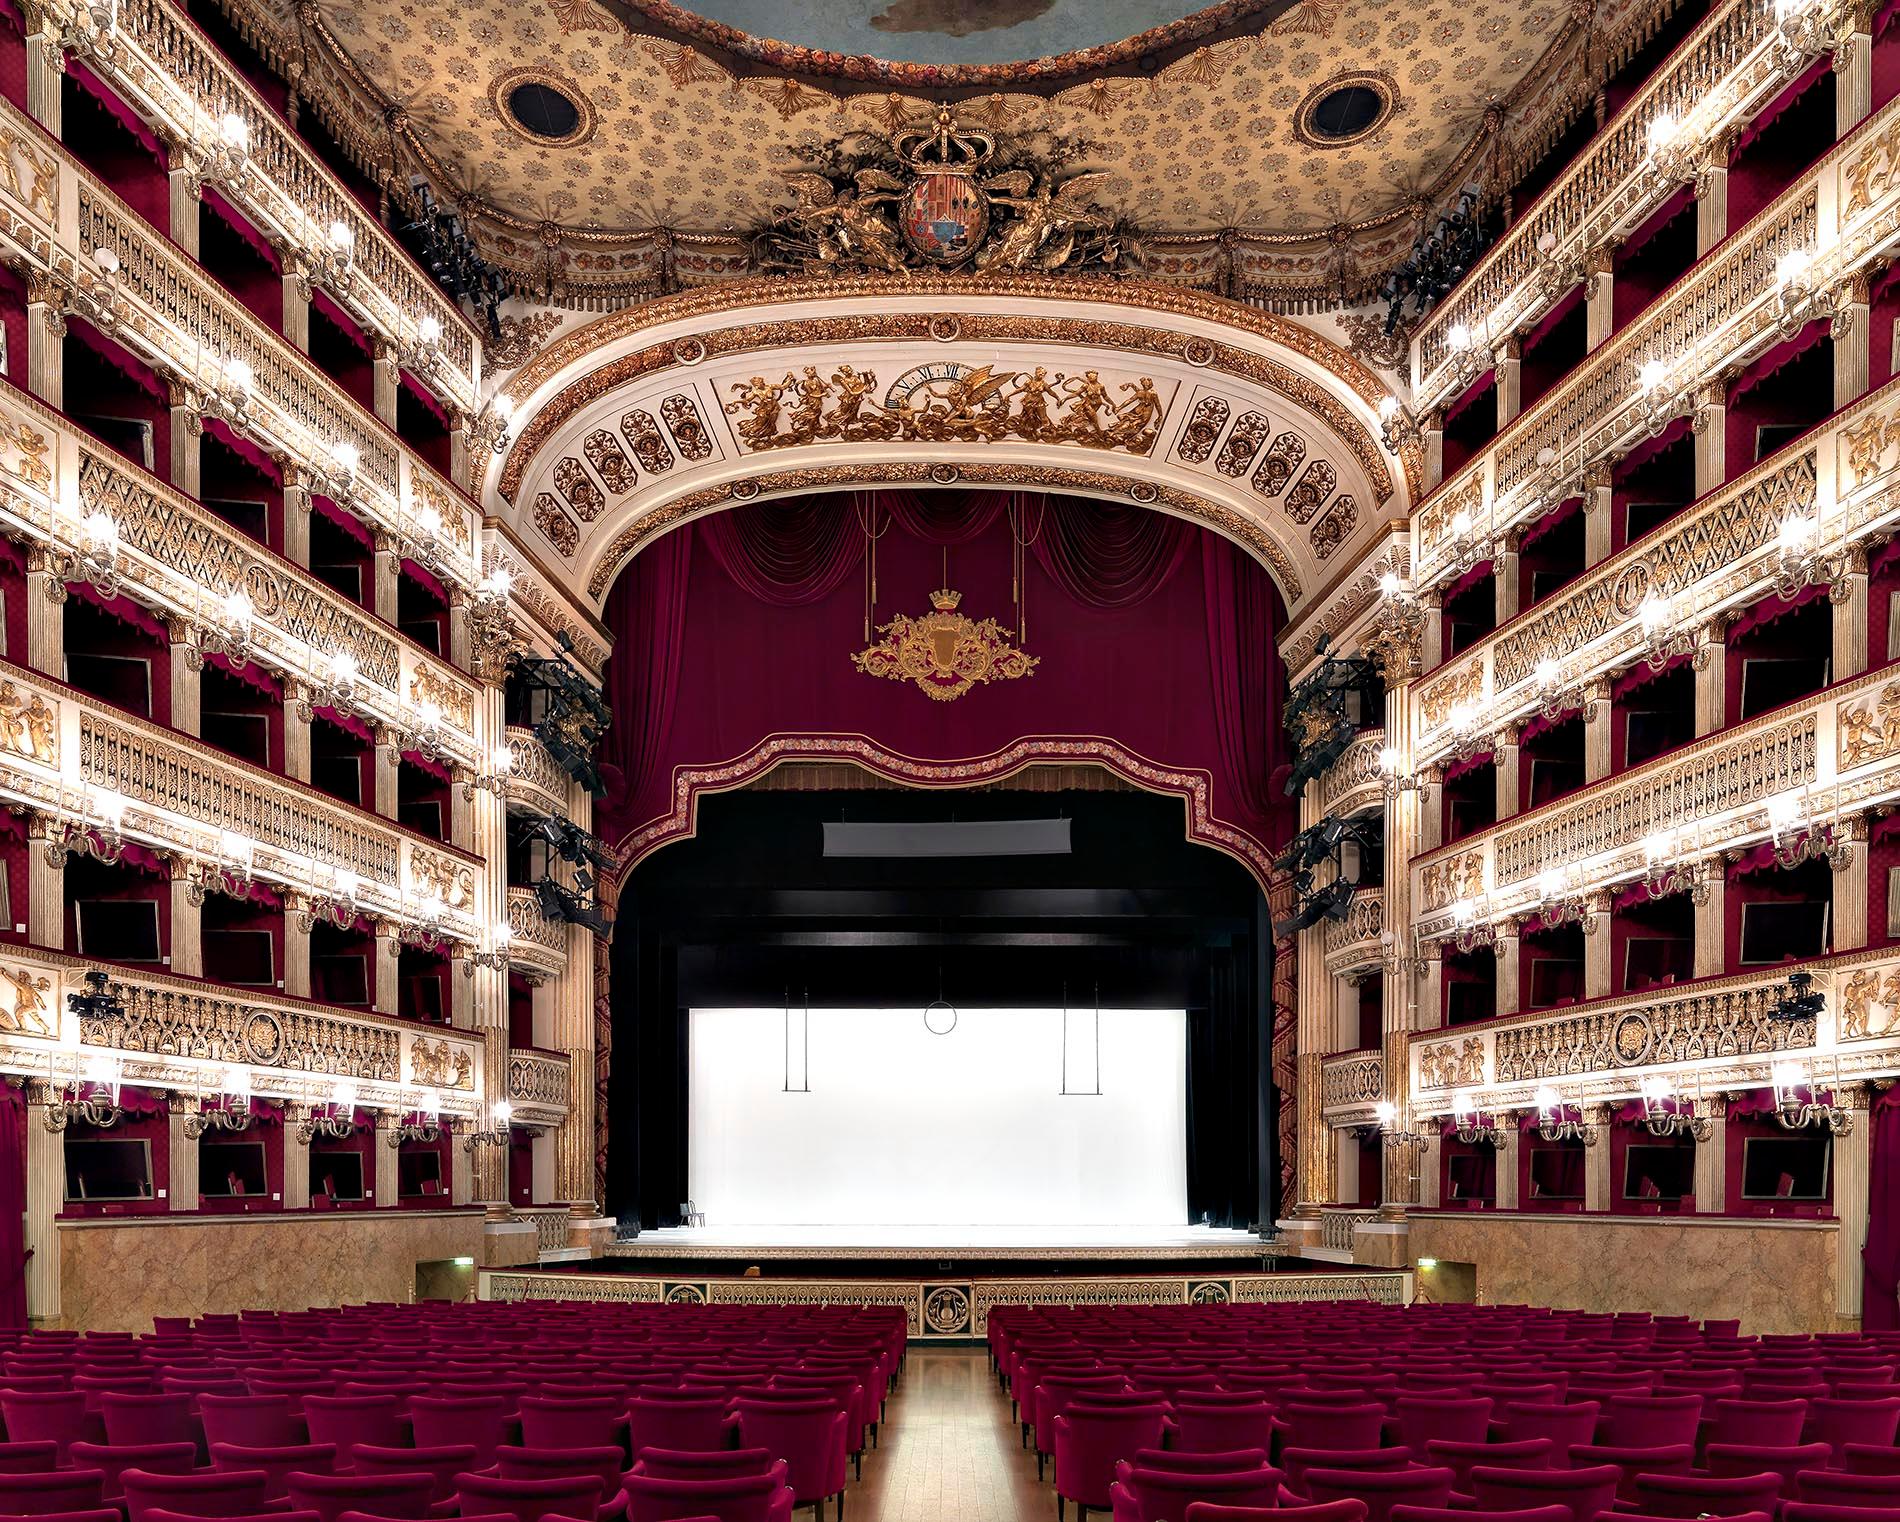 Massimo Listri Still-Life Photograph - Teatro San Carlo, Napoli 2013 - theatre in Italy with red interior